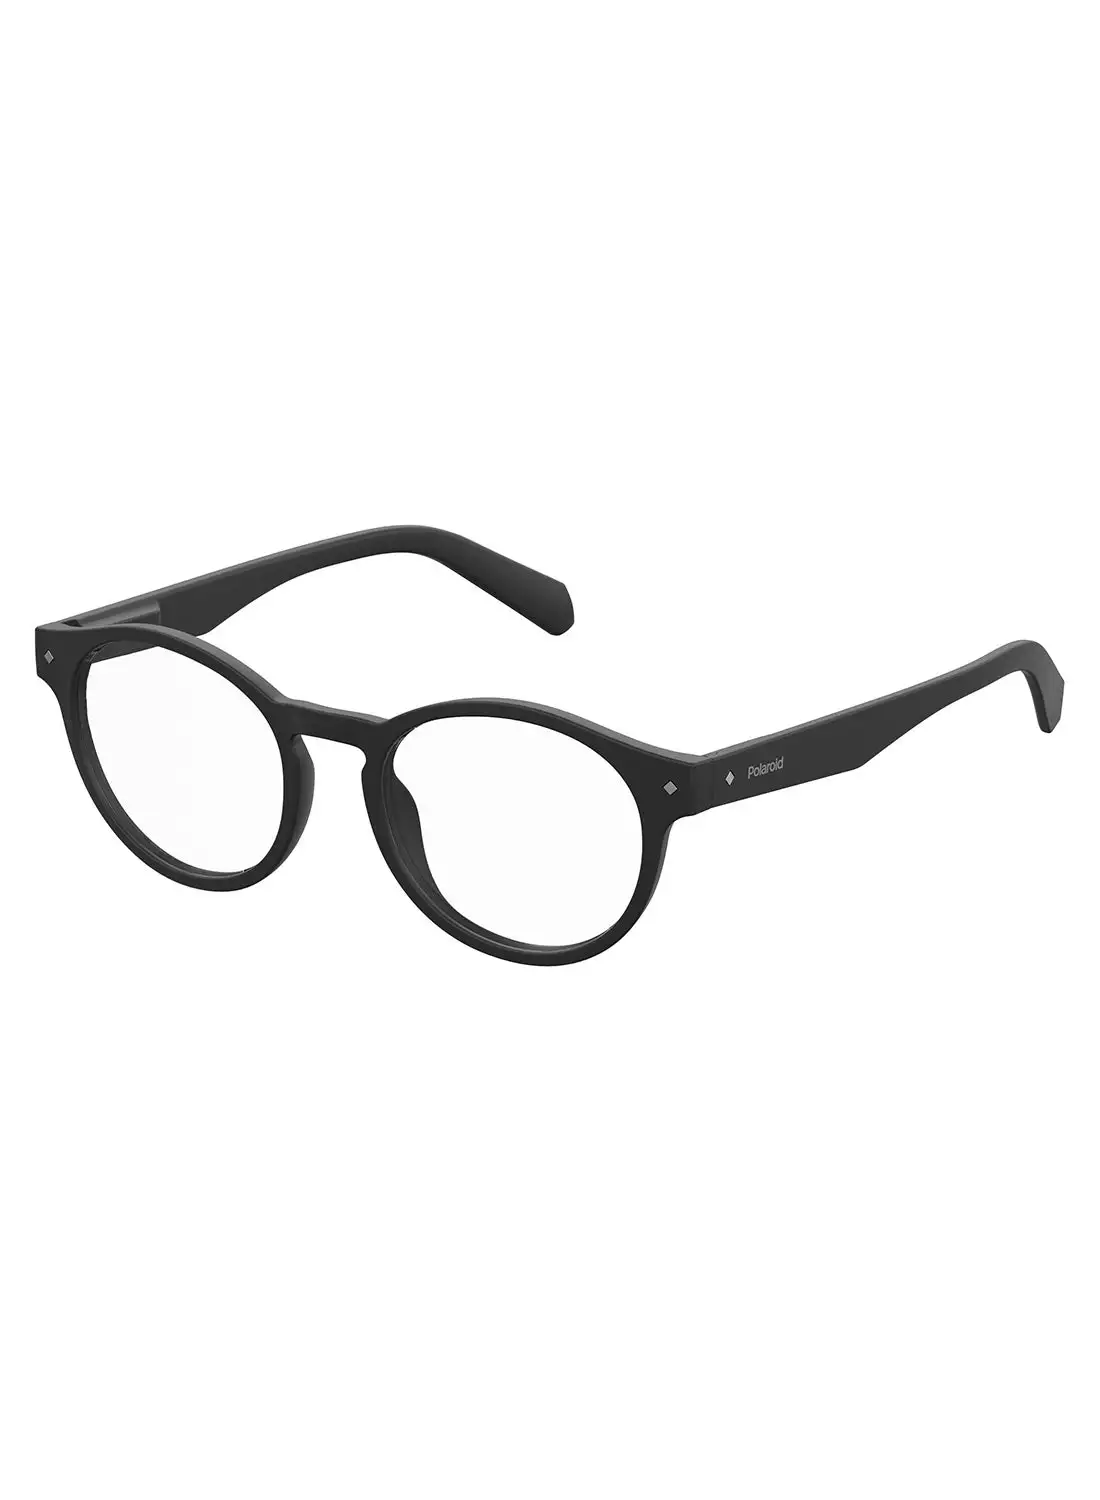 Polaroid Unisex Oval Reading Glasses - Pld 0021/R Black 49 - Lens Size: 49 Mm